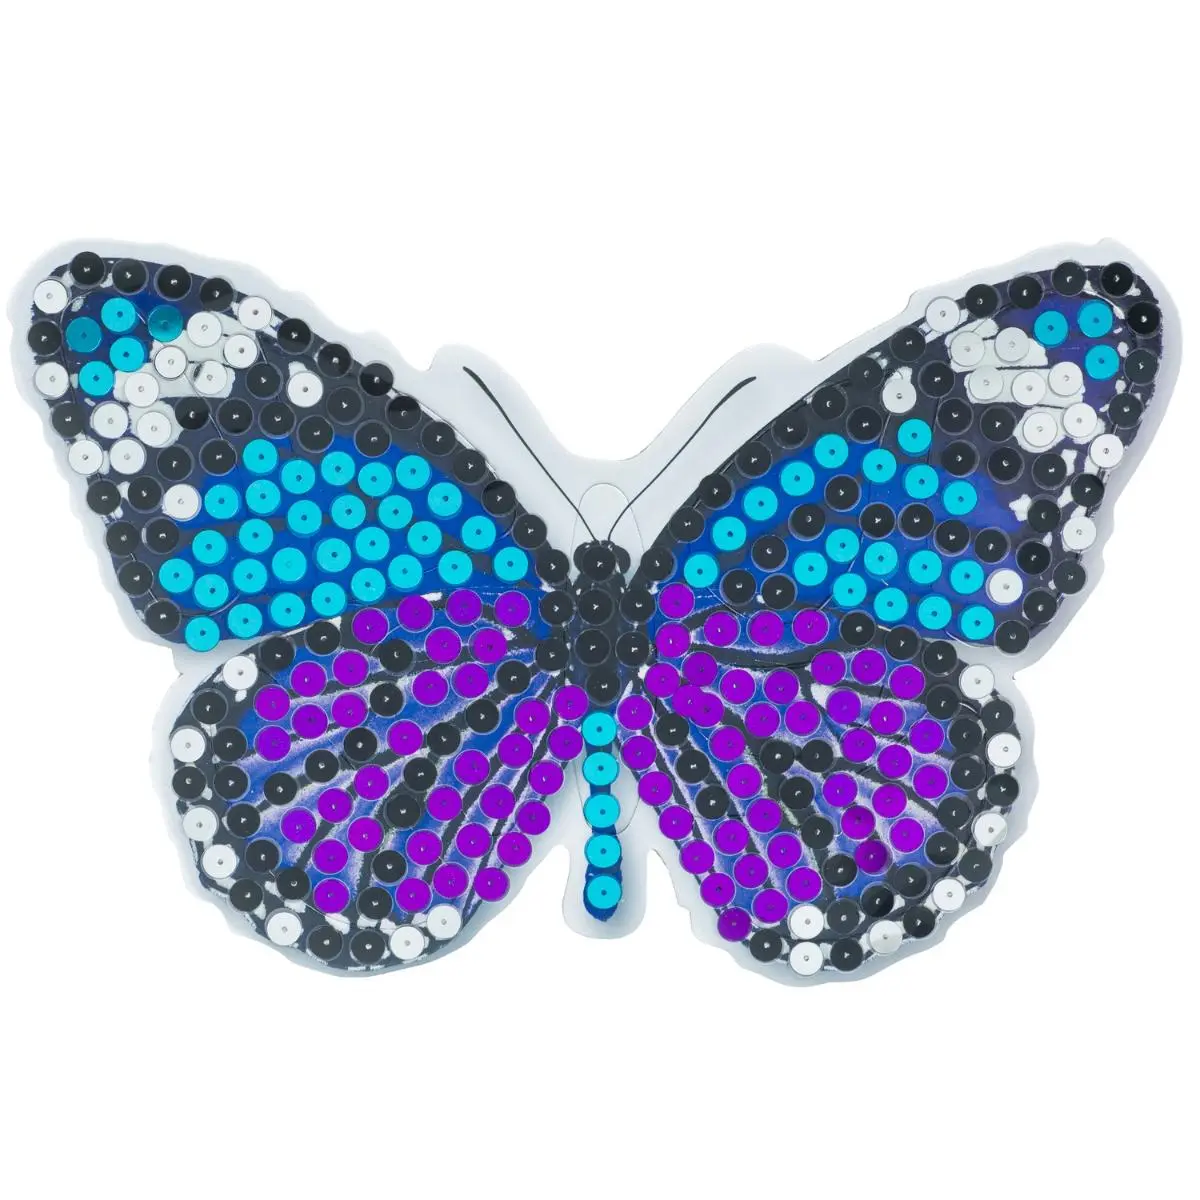 Набор для творчества "3D картина" Великолепные бабочки (4 дизайна) - фото